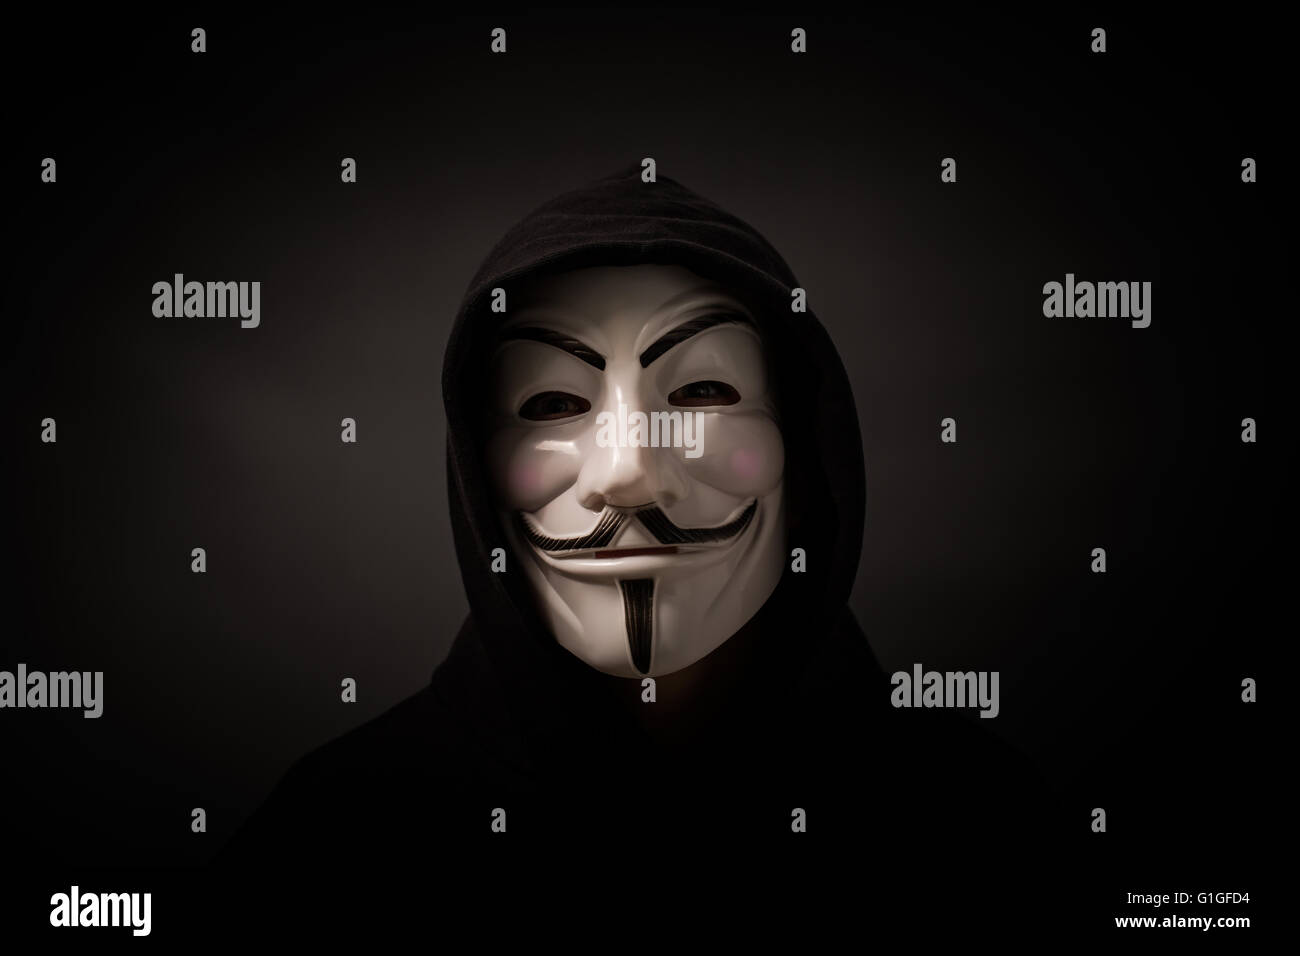 Bełchatow, Polonia - Dicembre 06, 2015: un uomo che indossa la maschera della Vendetta - simbolo per la online gruppo hacktivist anonimo. Foto Stock